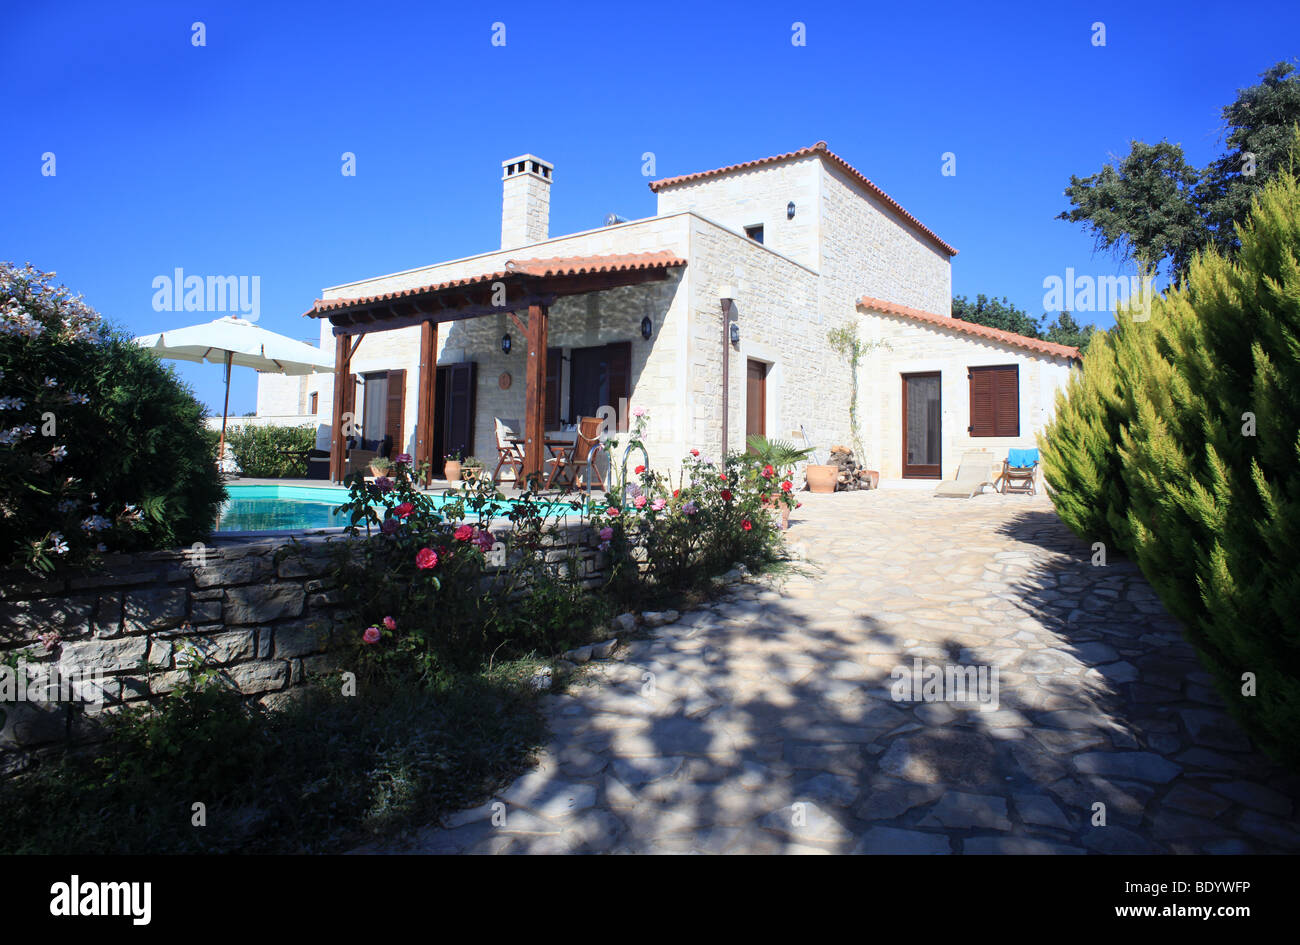 Un Grec de luxe maison de vacances ou villa de location sur l'île méditerranéenne de la Crète Banque D'Images